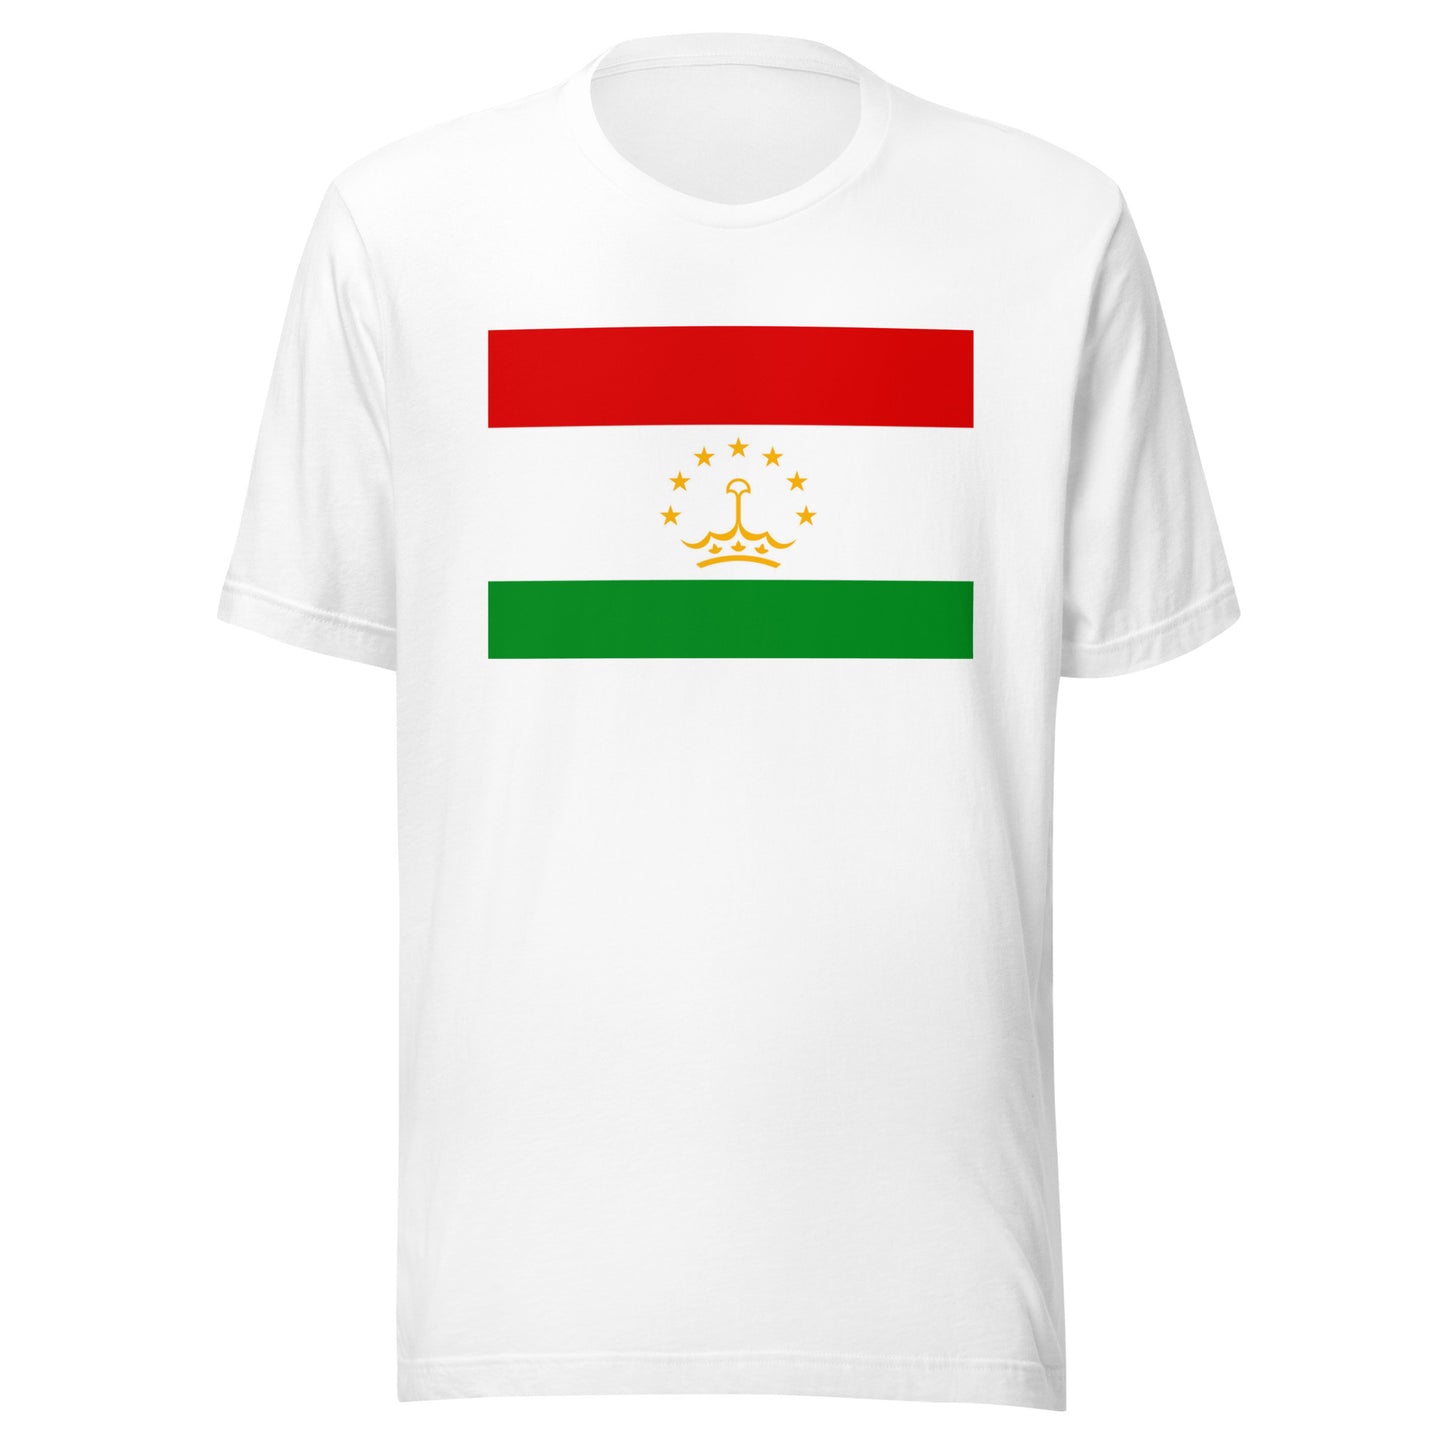 Tajikistan flag Unisex t-shirt